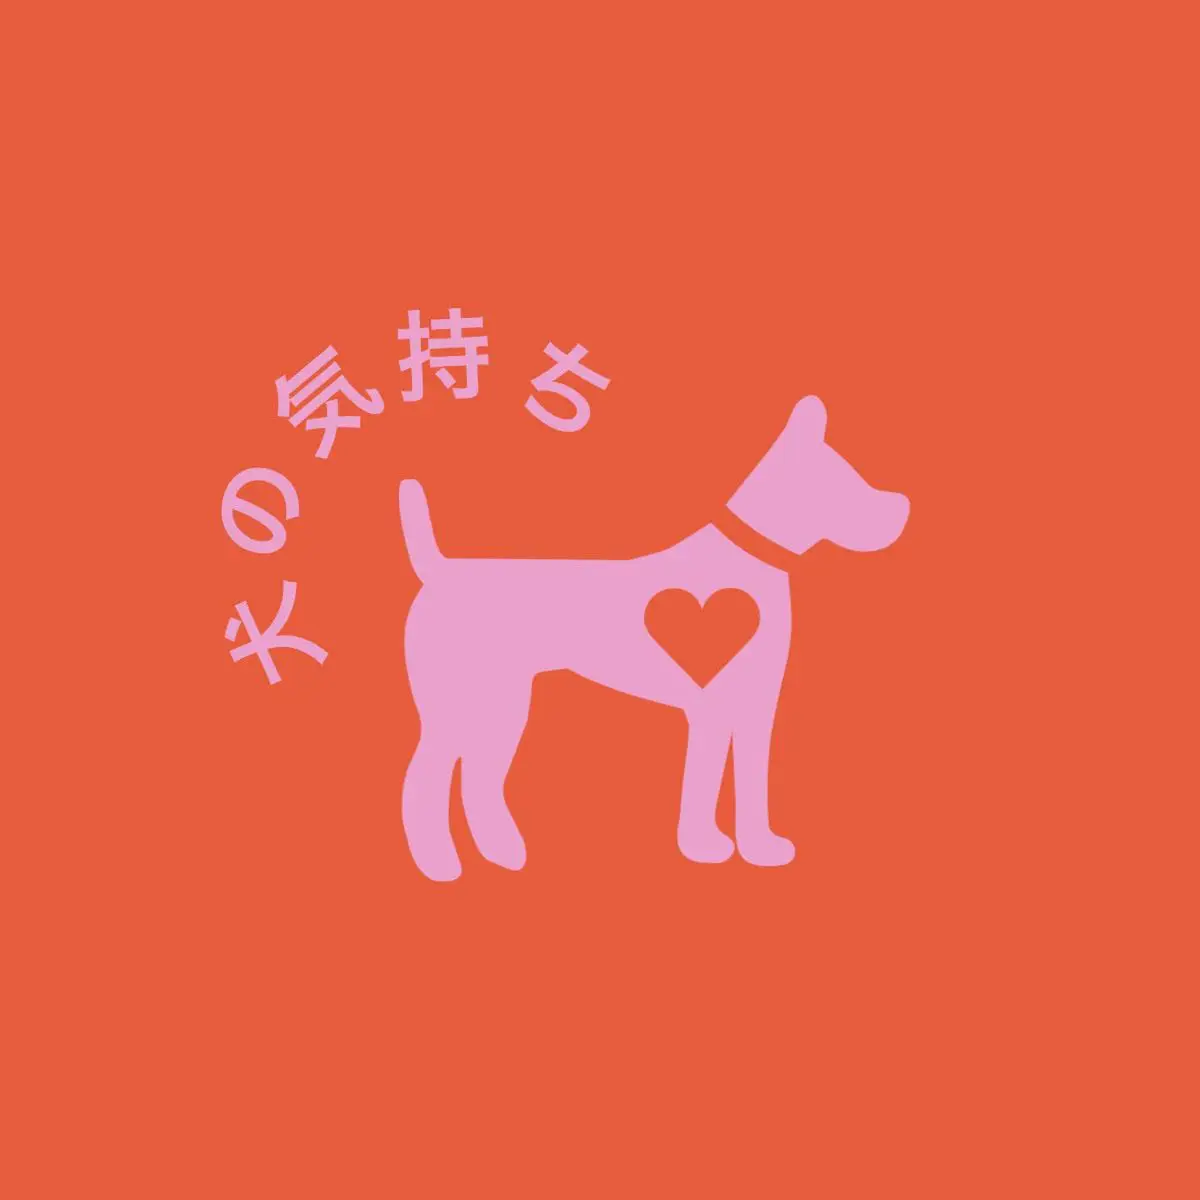 Heart dog logo